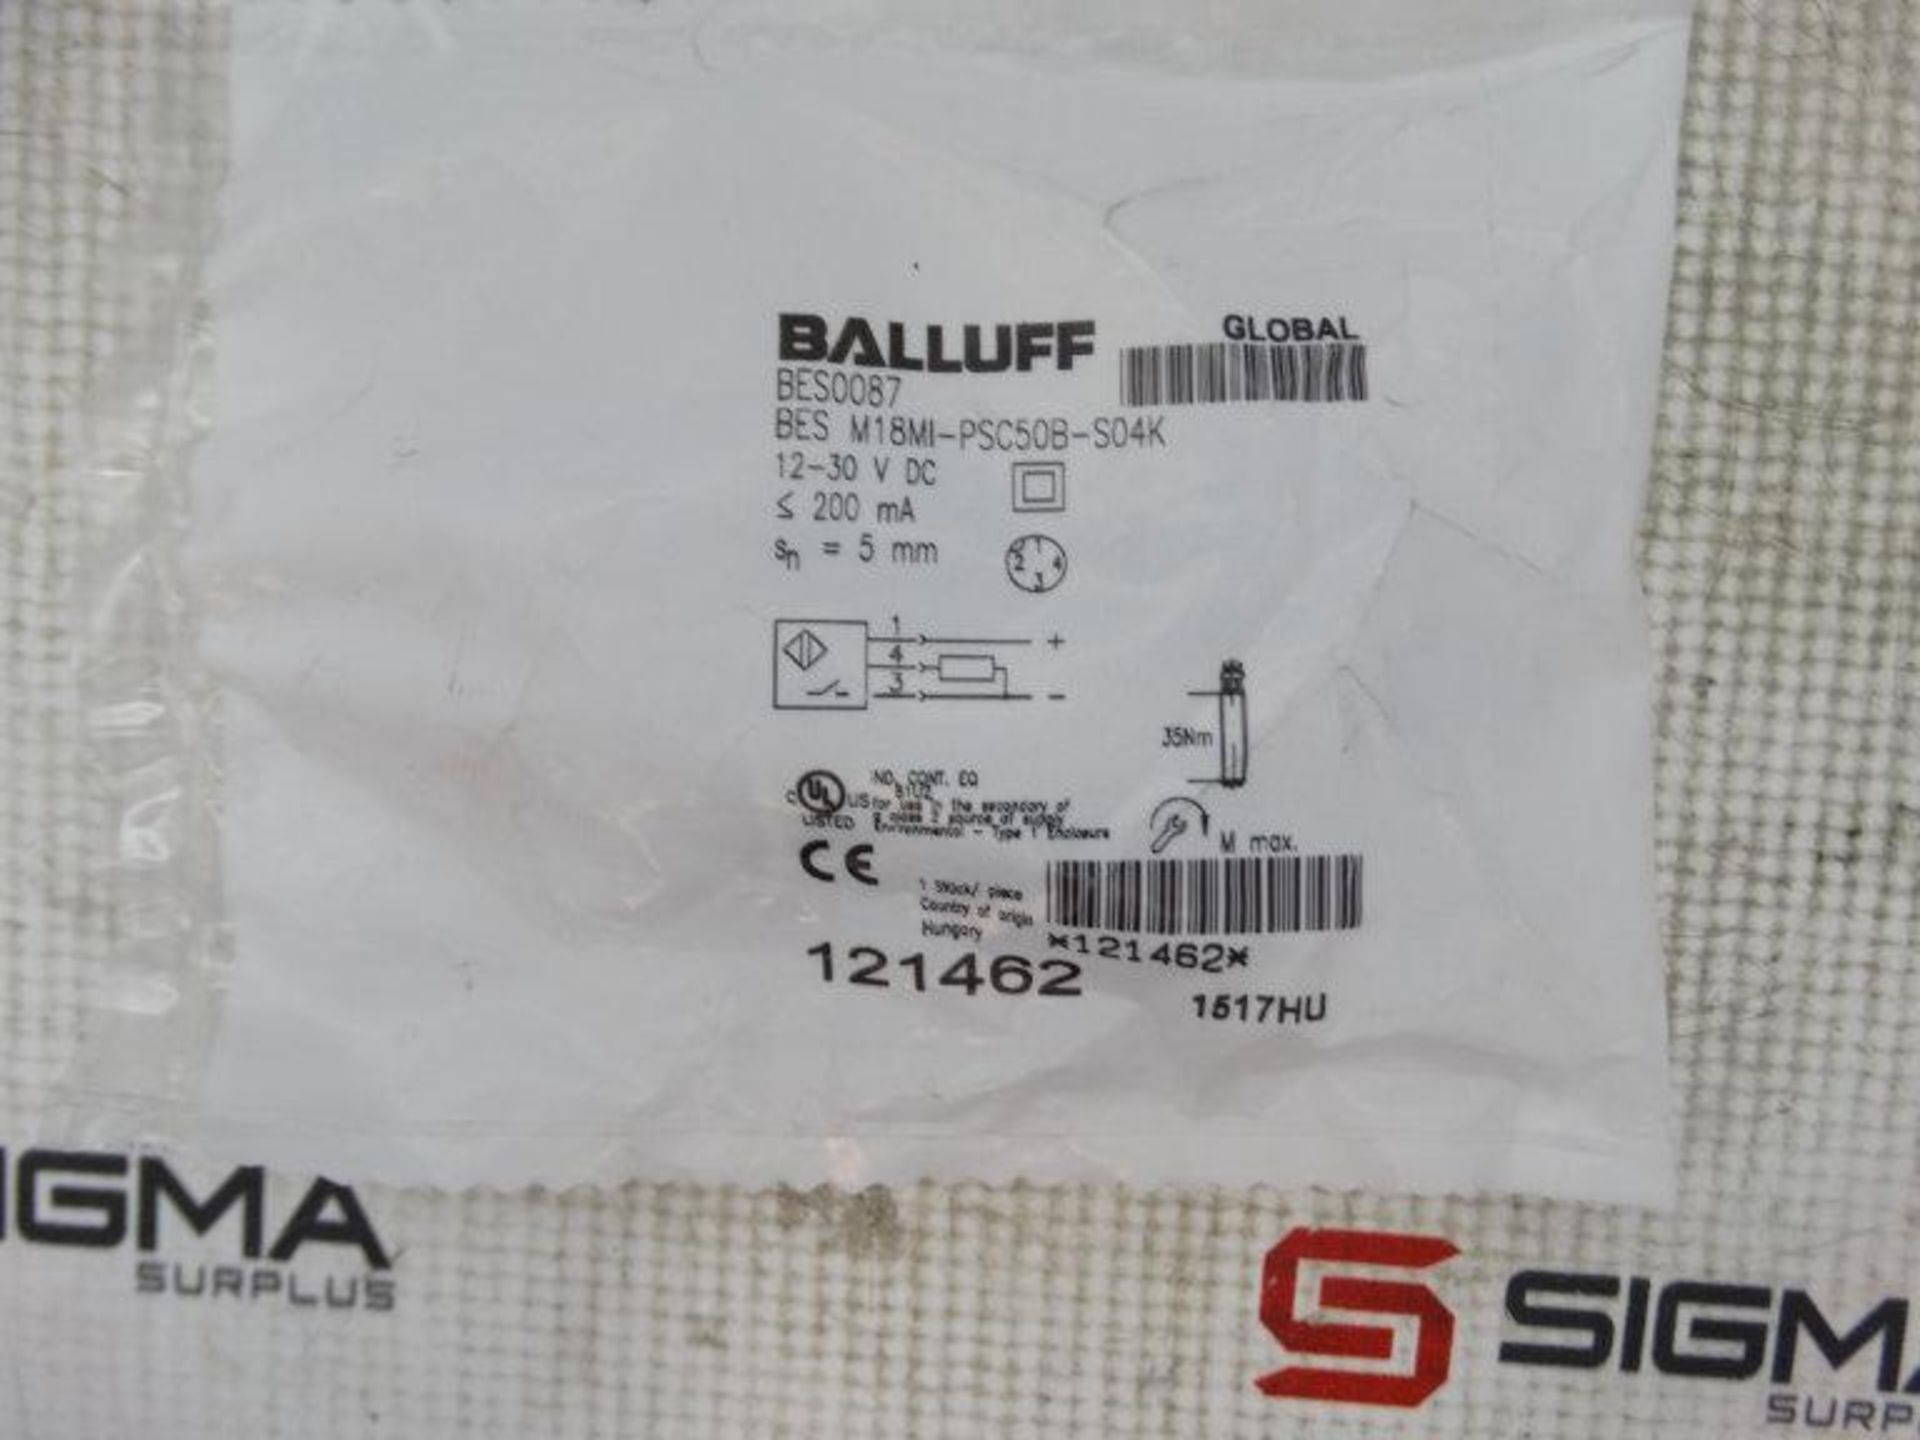 (10) BALLUFF BES M18MI-PSC50B-S04K SENSOR